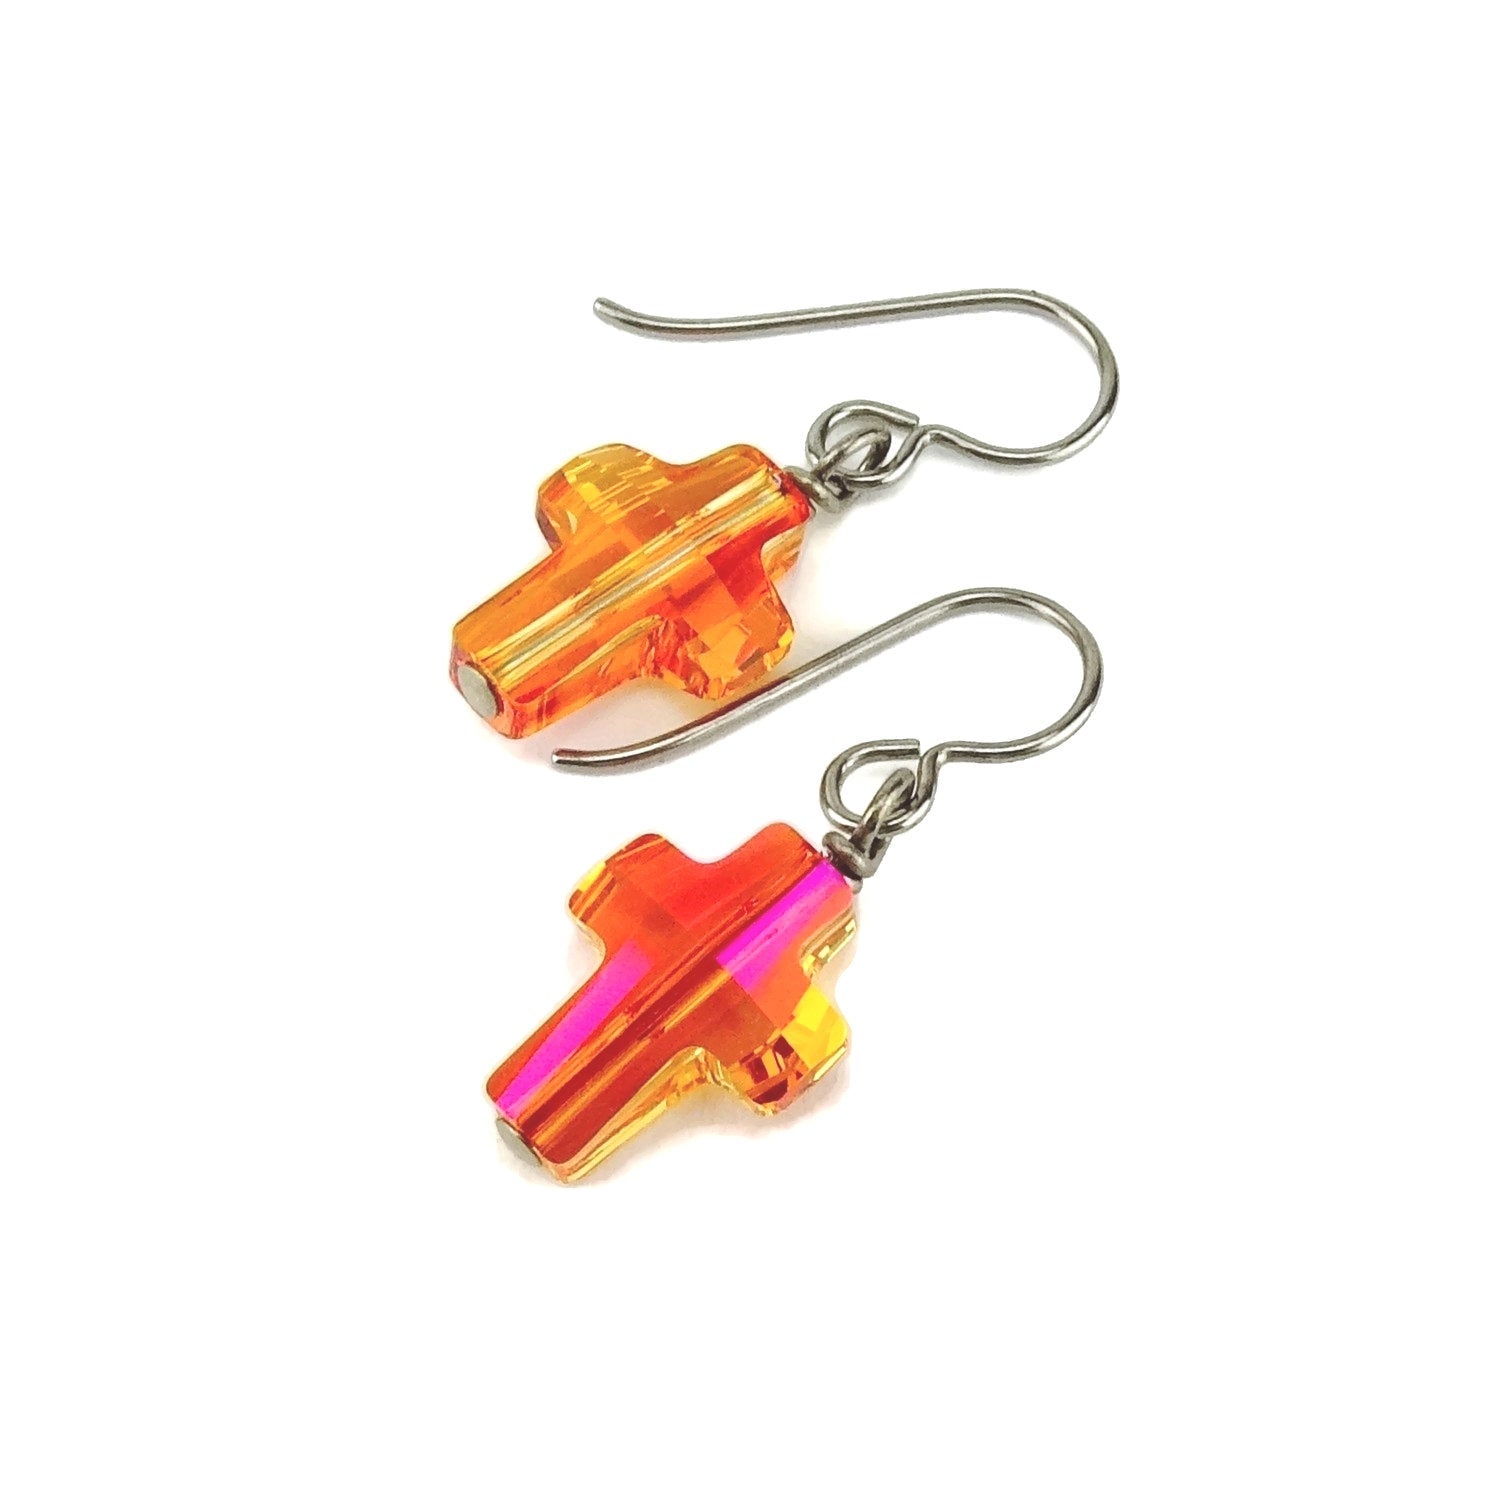 Astral Pink Cross Titanium Earrings, Niobium Wire Wrapped Swarovski Crystal, Hypoallergenic Nickel Free Earrings for Sensitive Ears, Orange